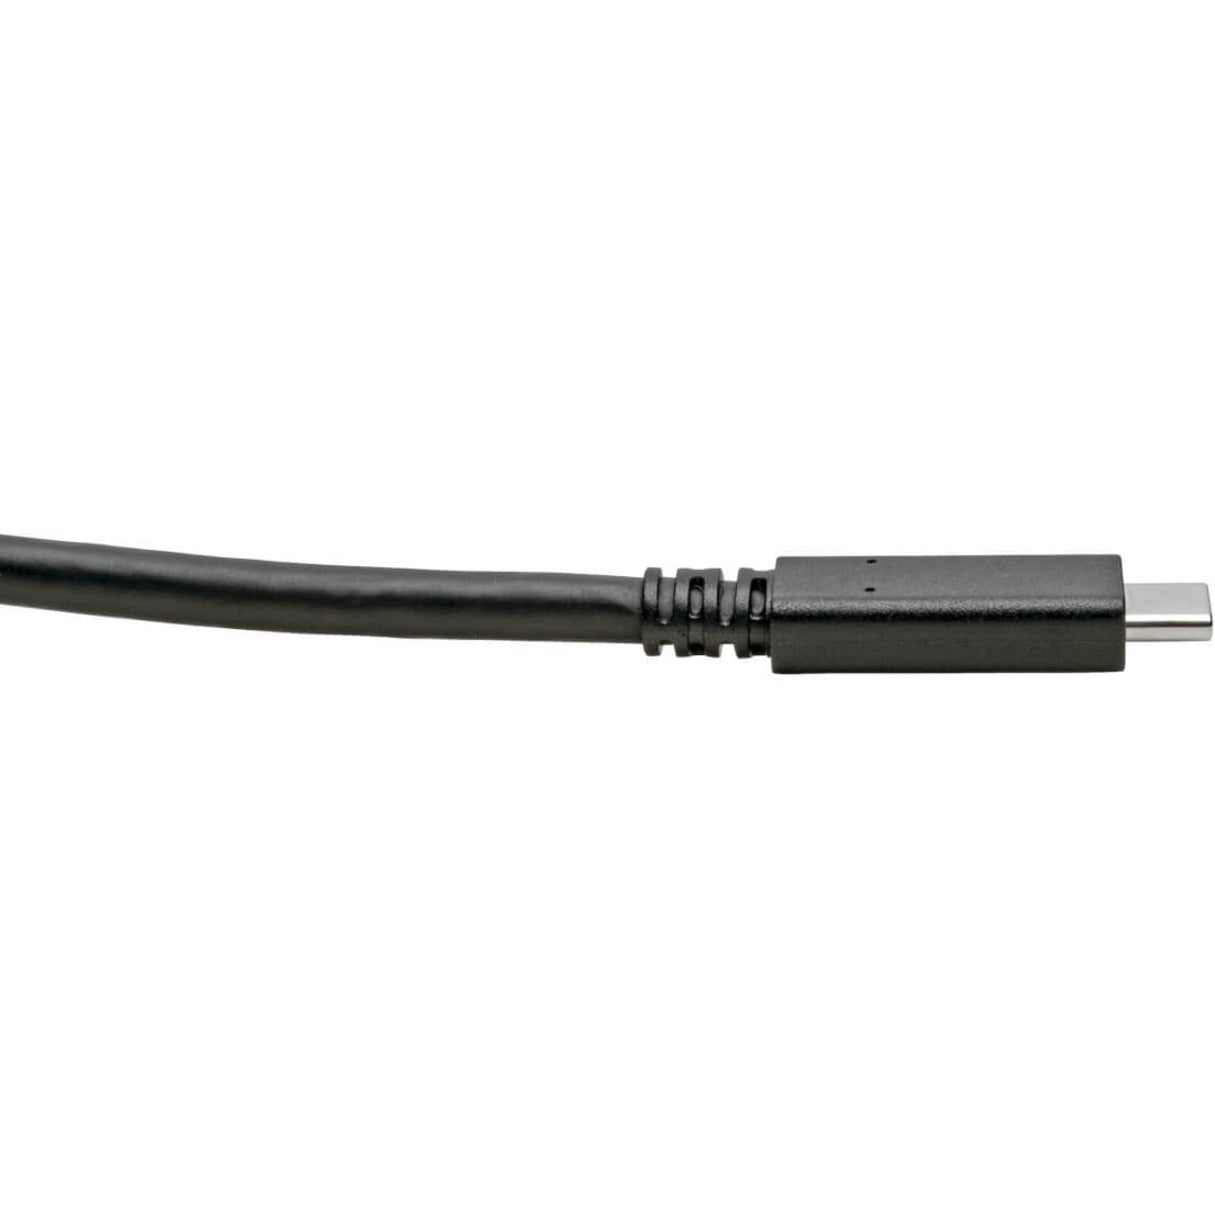 트리프 라이트 U420-C06 썬더볼트 3 데이터 전송 케이블 6 ft 충전 뒤집어도 사용 가능 USB-전원 공급 (USB PD)